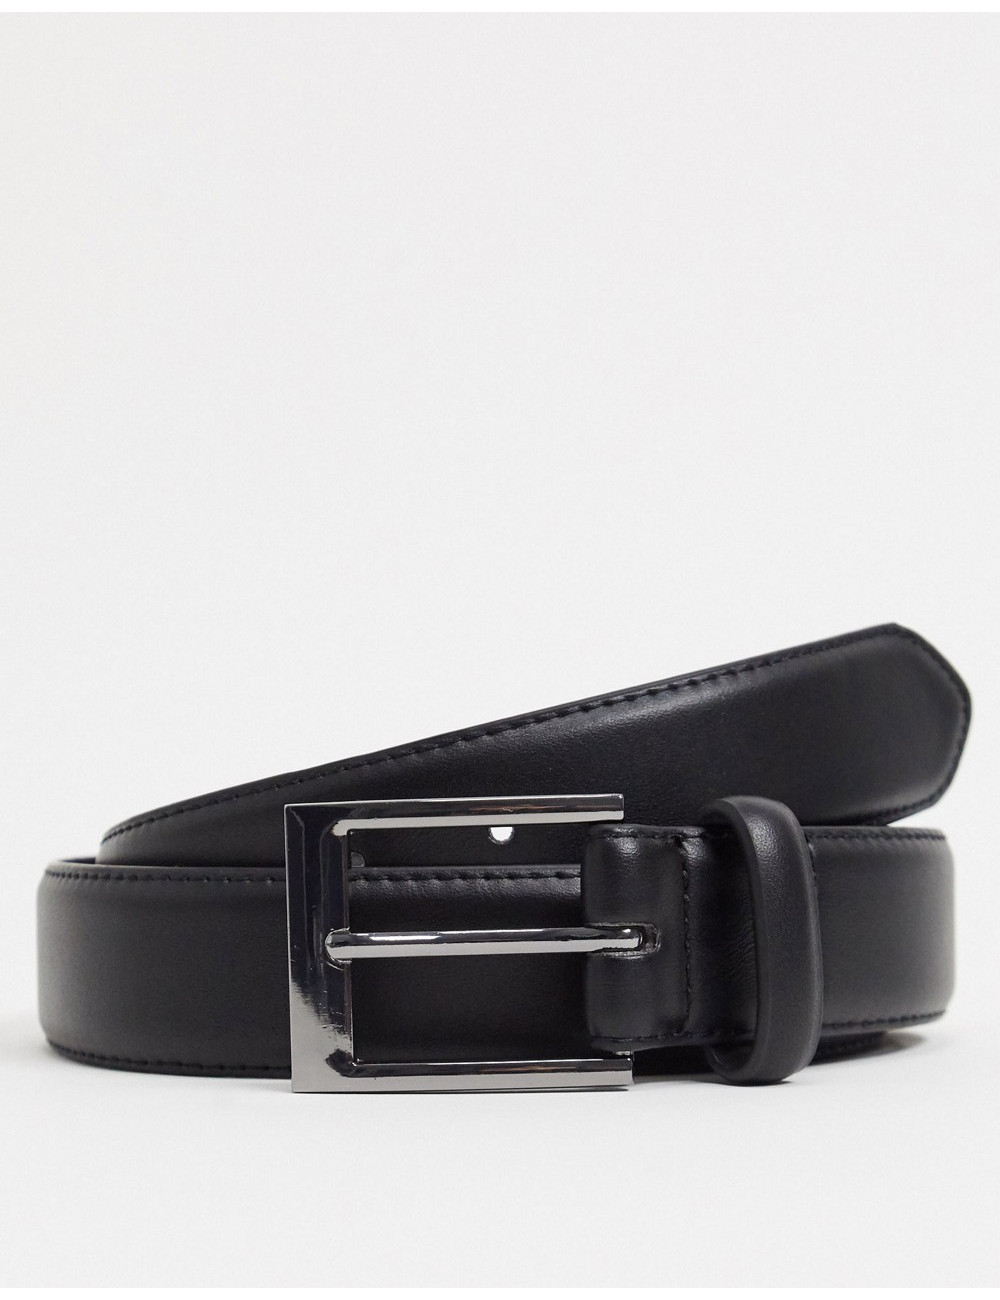 New Look smart belt in black